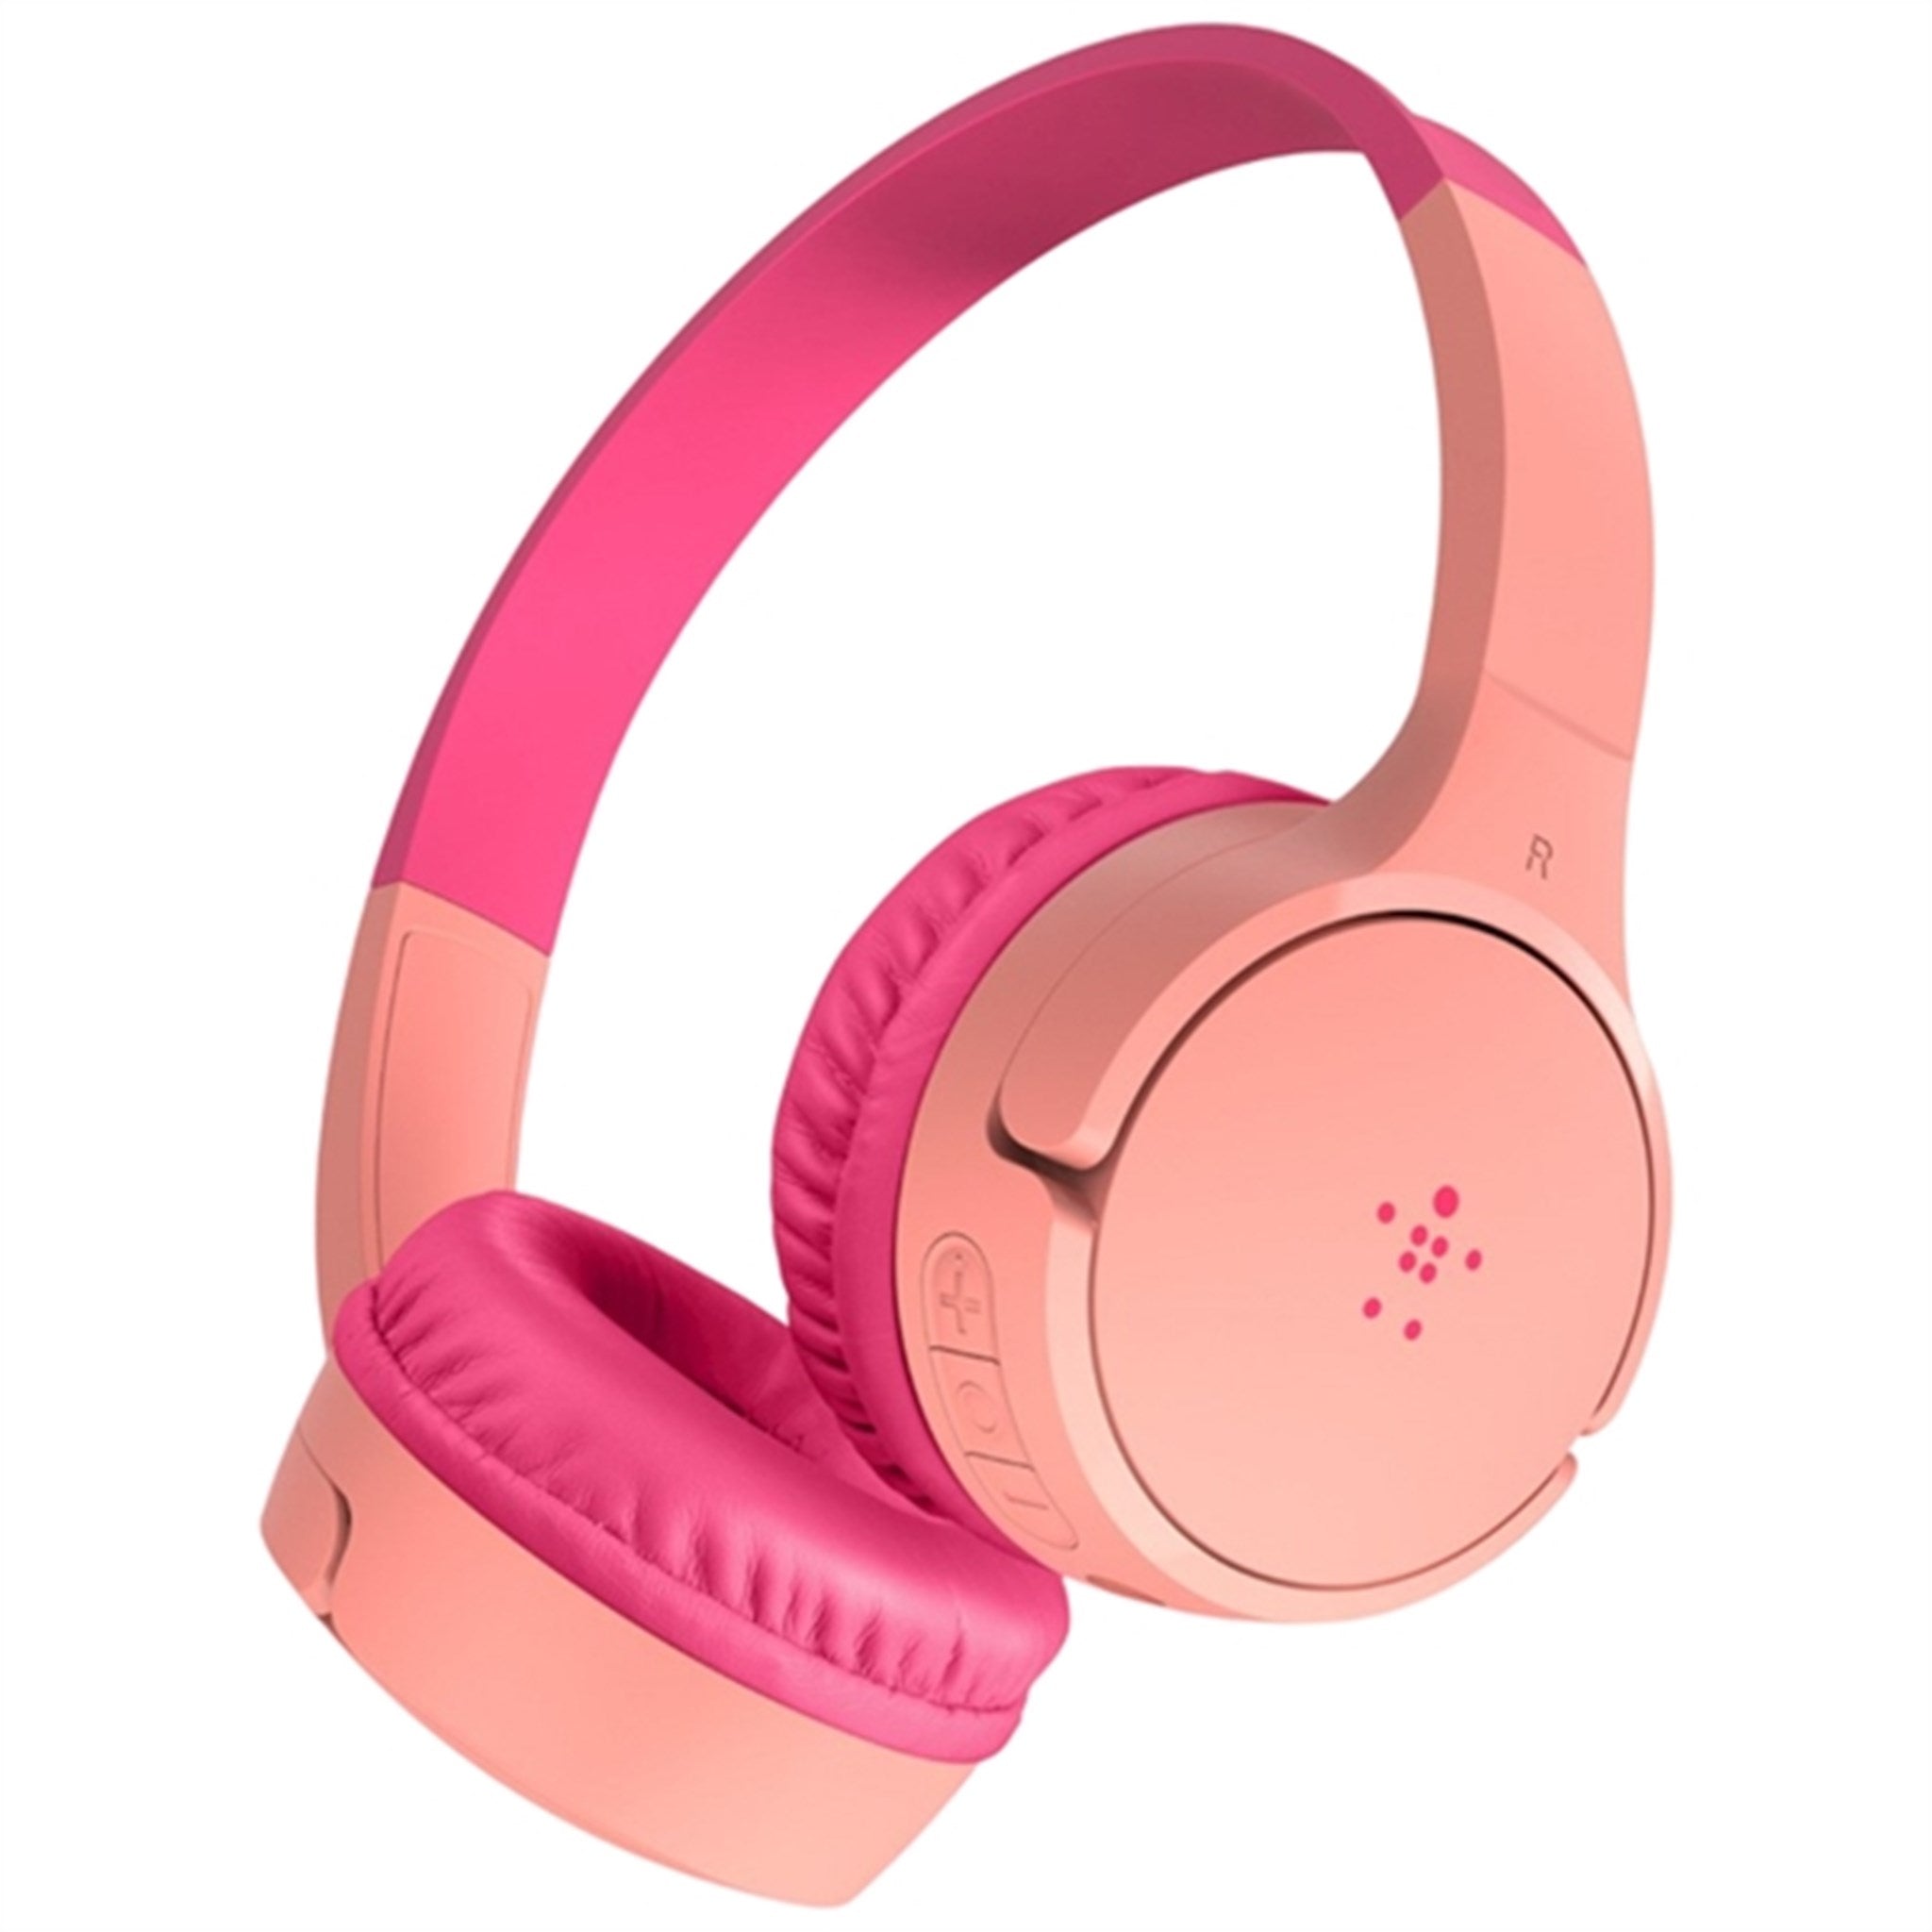 Belkin SOUNDFORM Mini Wireless On-Ear Headphones Pink 2